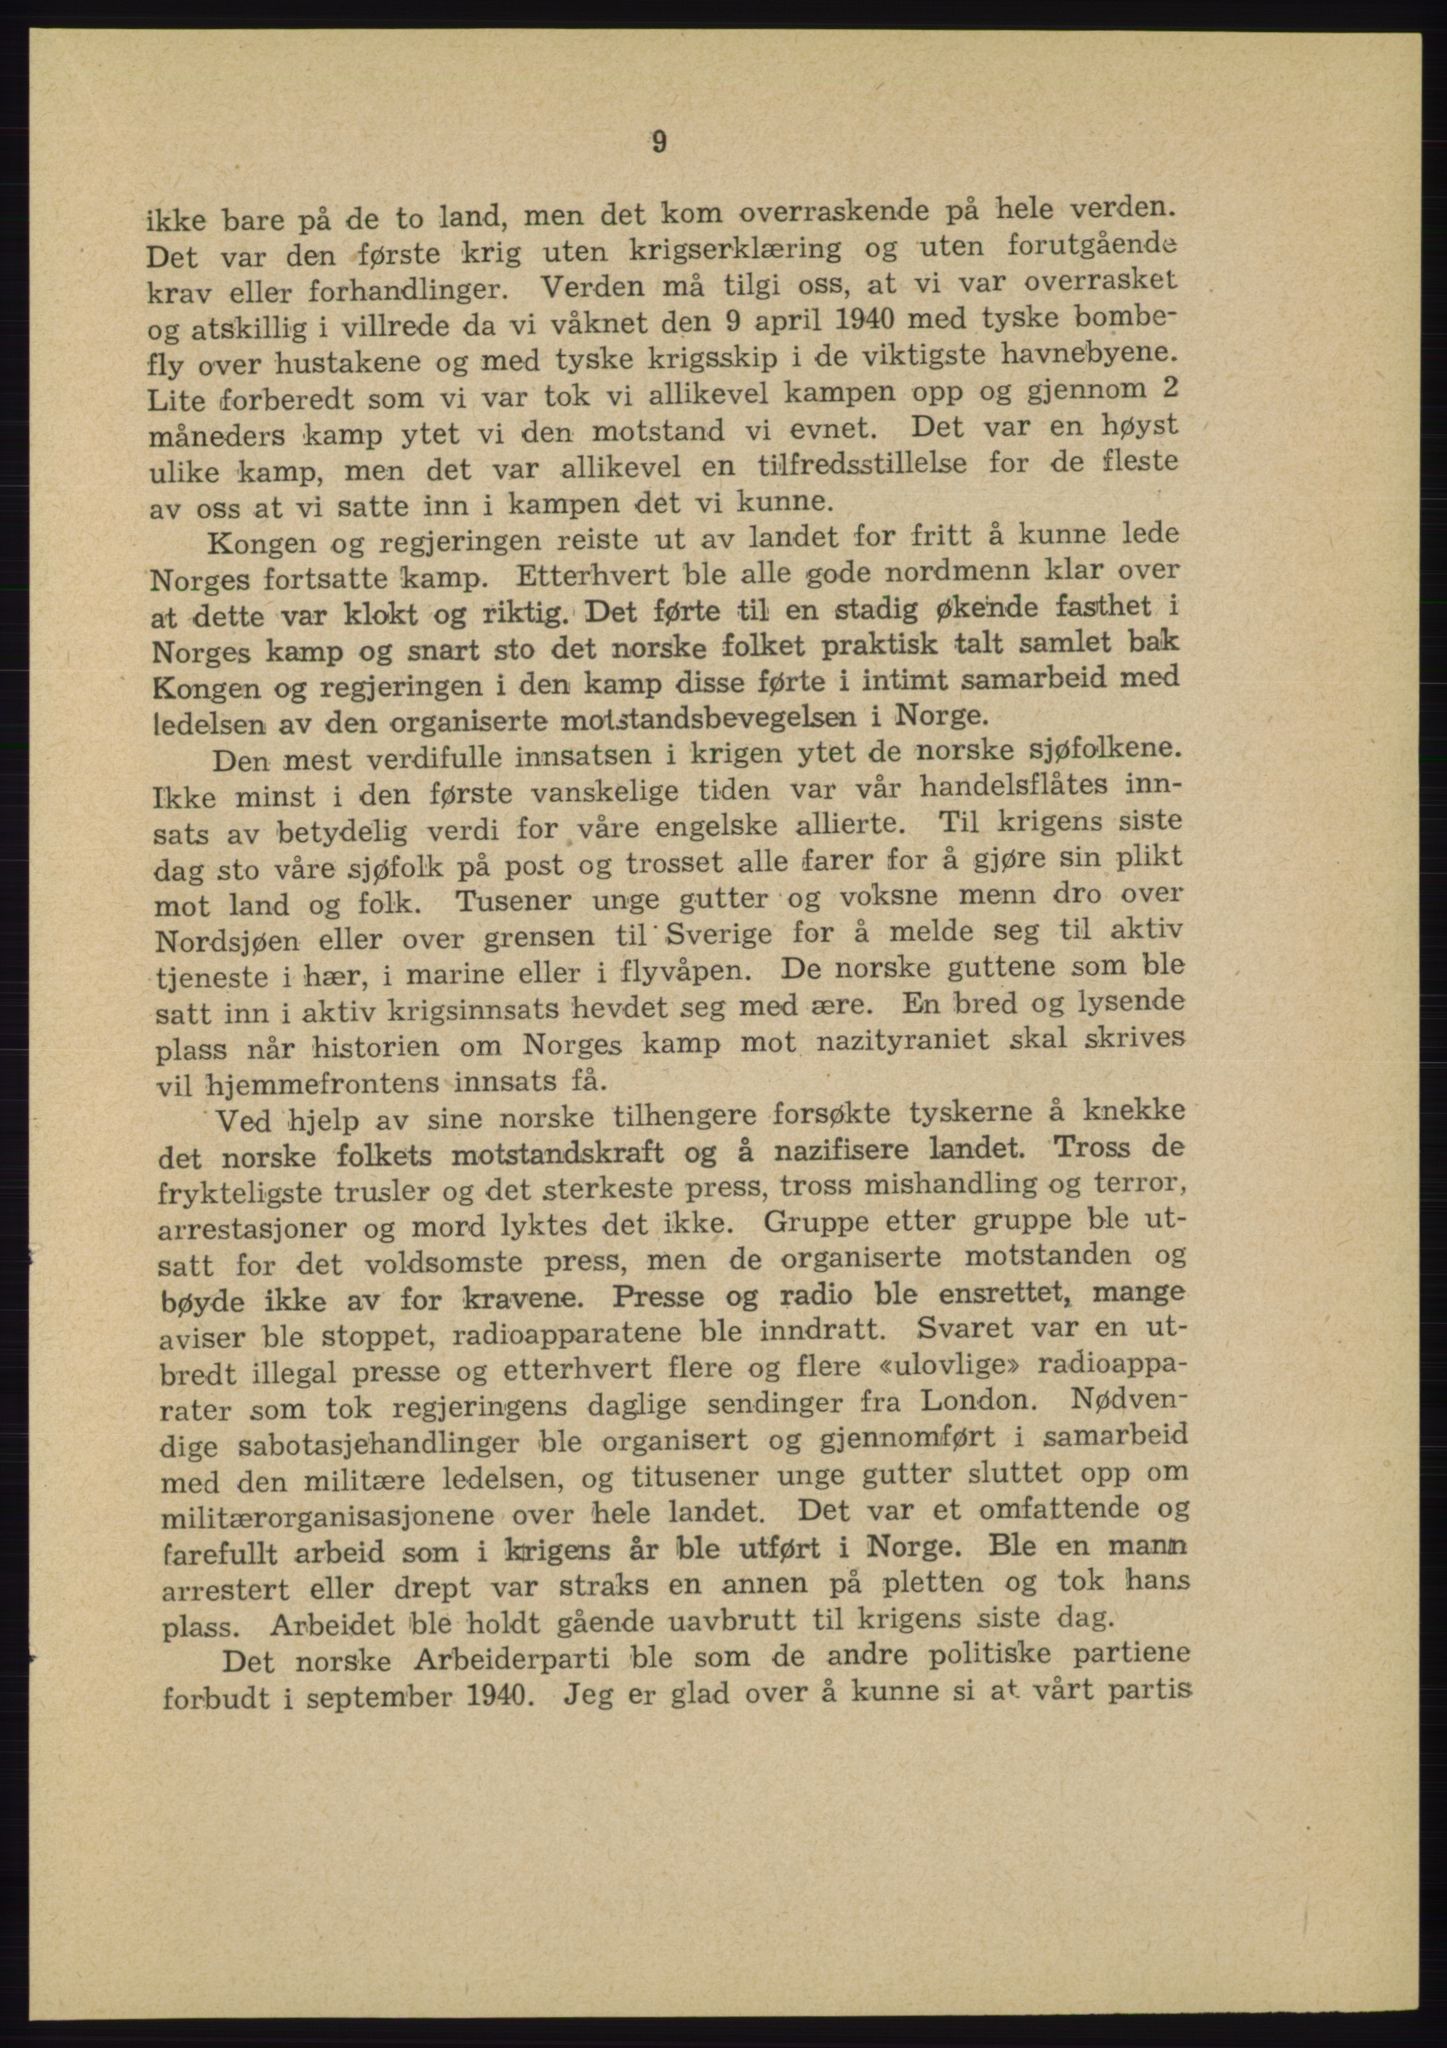 Det norske Arbeiderparti - publikasjoner, AAB/-/-/-: Protokoll over forhandlingene på landsmøtet 31. august og 1.-2. september 1945, 1945, s. 9